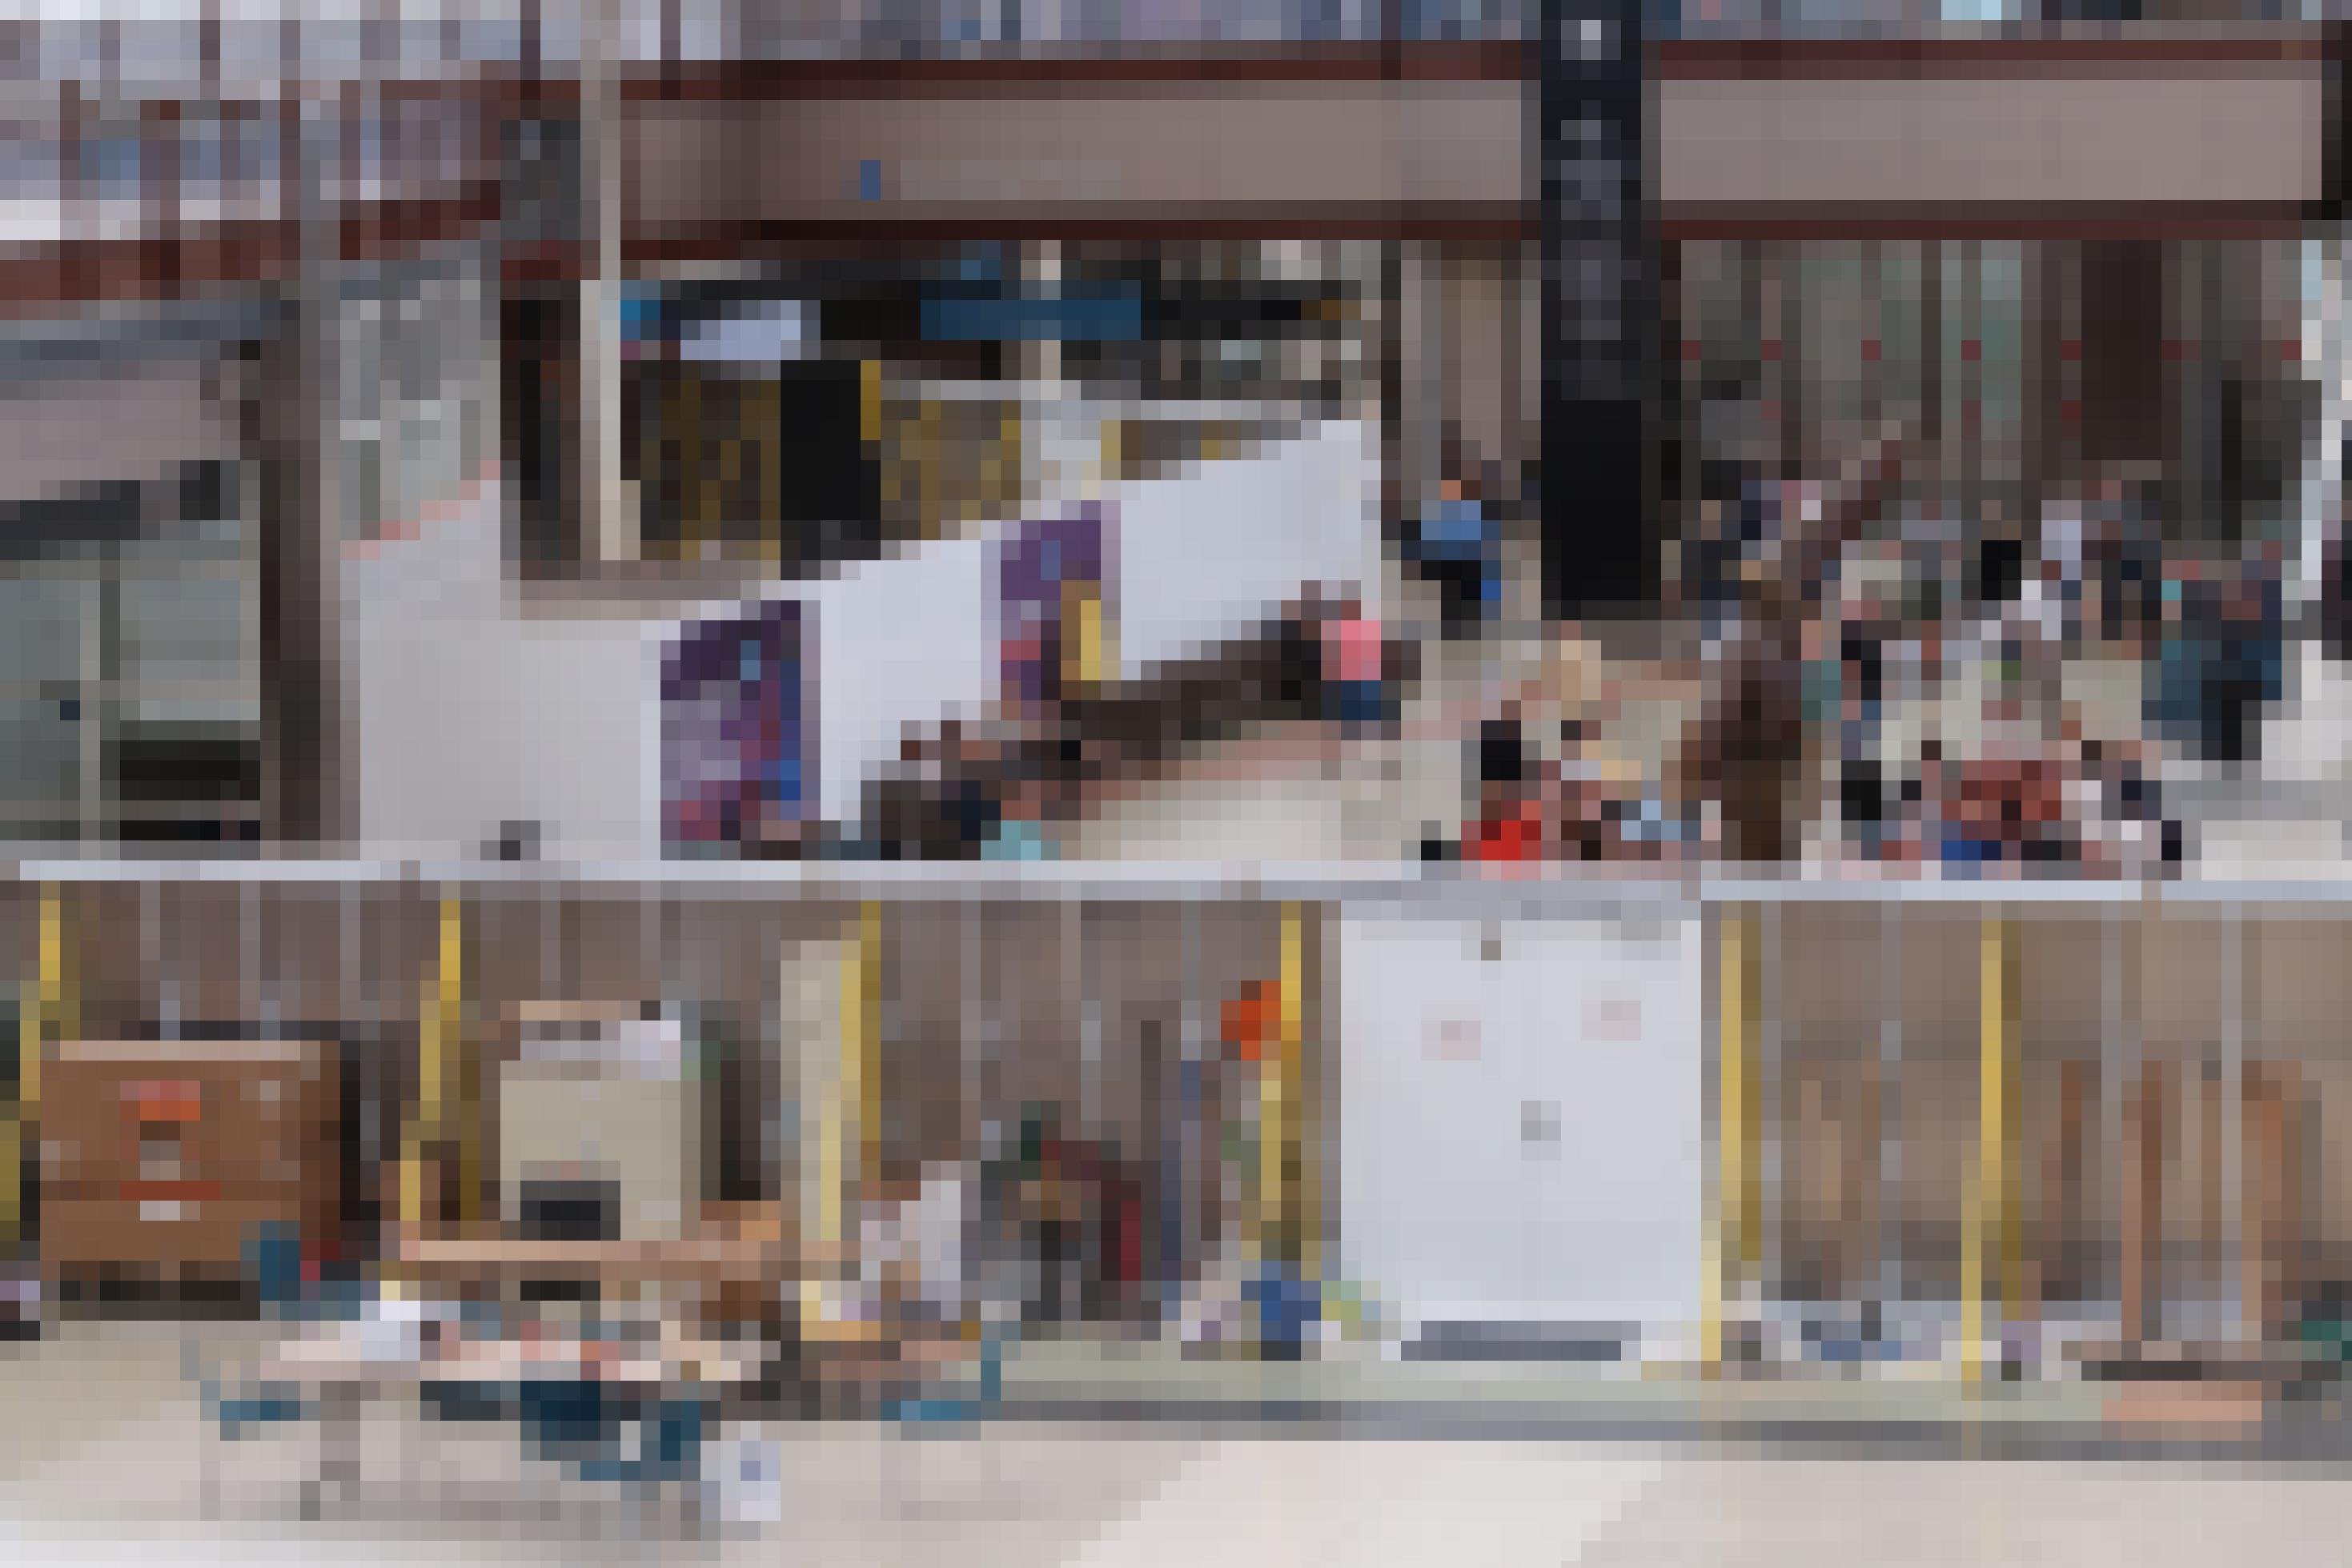 Das Bild zeigt Personen im Wartebereich eines Terminals. Im Terminal sind Sichtschutzwände mit Plakatmotiven aufgestellt. Dahinter sieht man eine Baustelle.